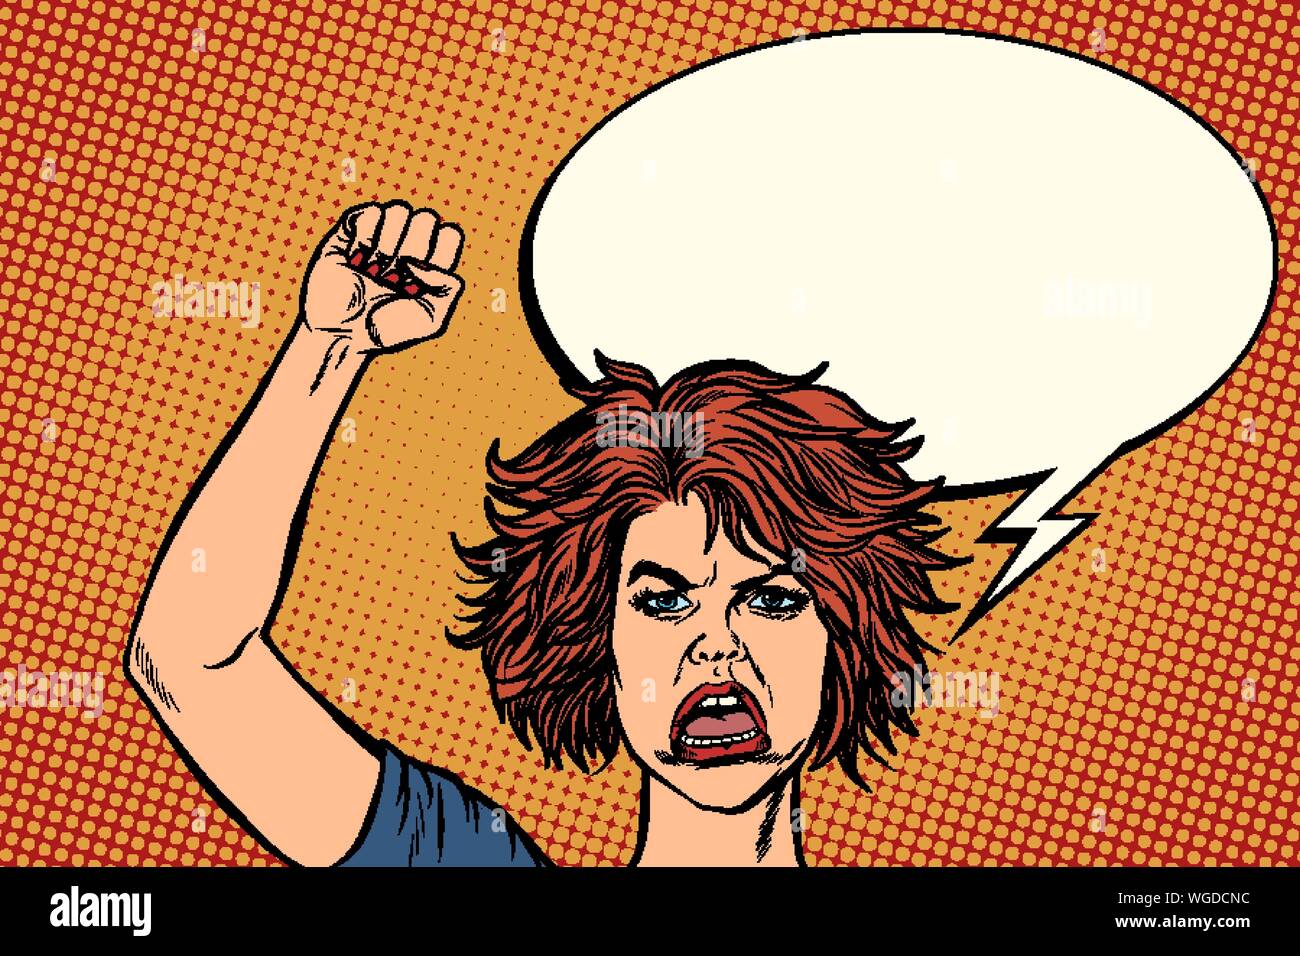 Wütend Demonstrant Frau, Rallye widerstand Freiheit Demokratie. Pop Art retro Vektor illustration Zeichnung Stock Vektor